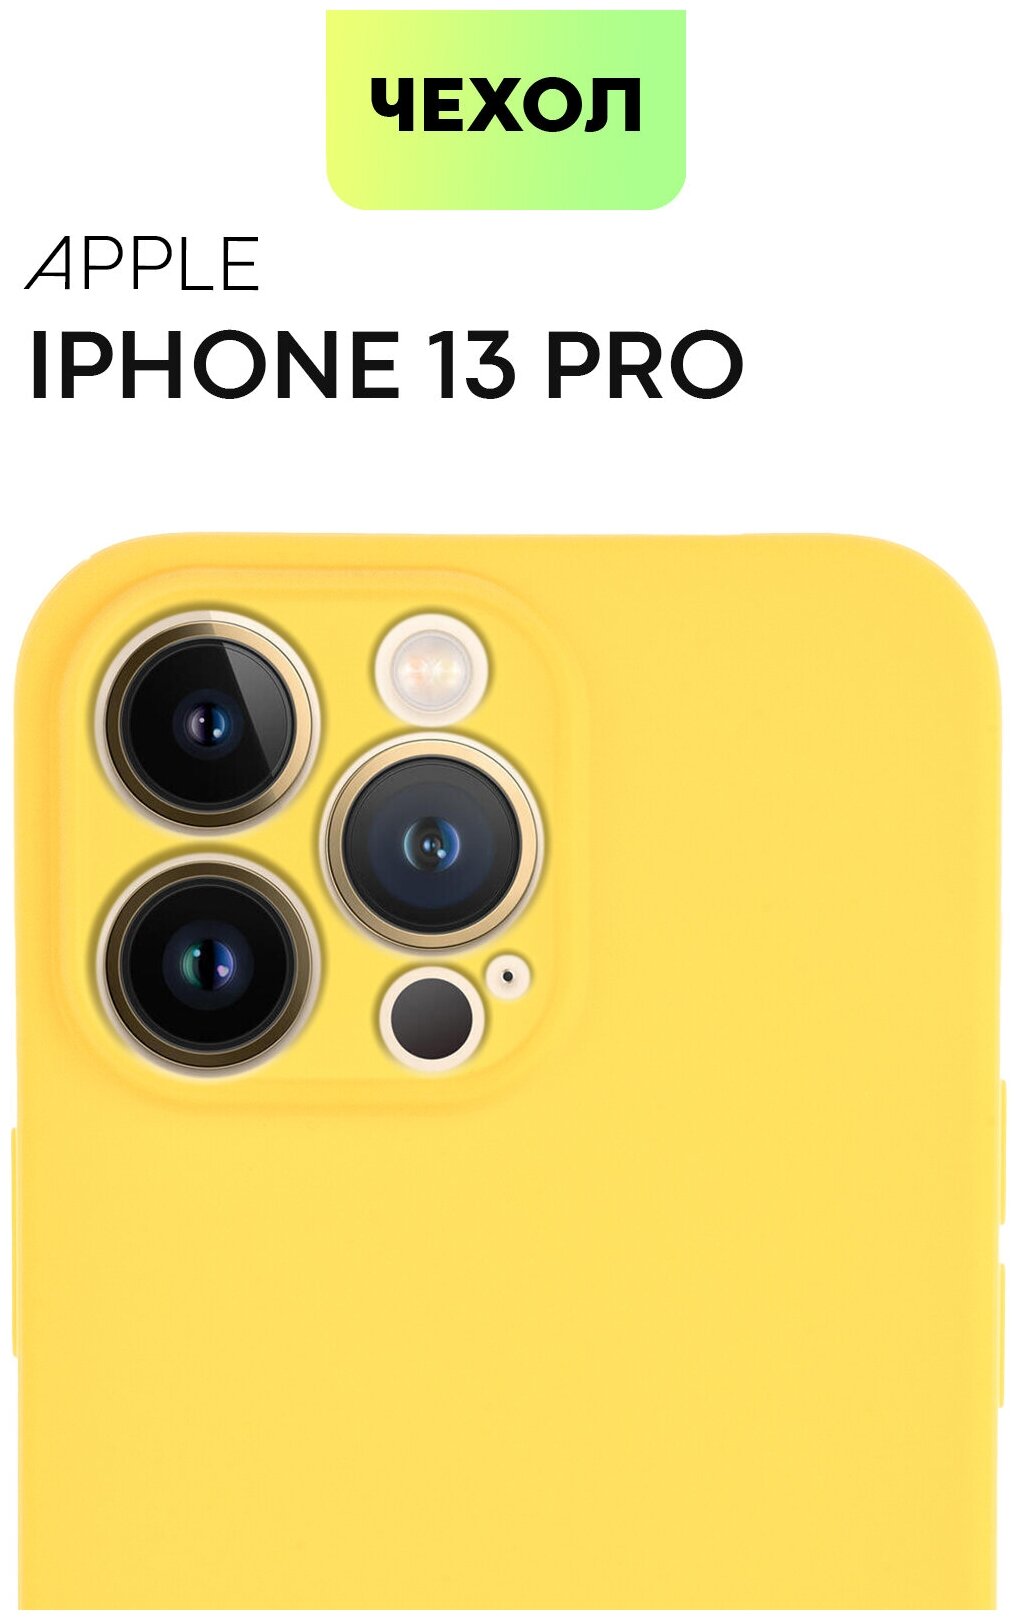 Чехол для Apple iPhone 13 Pro (Эпл Айфон 13 Про) тонкий, силиконовый чехол, матовое SOFT-TOUCH покрытие, защита модуля камер, желтый, BROSCORP